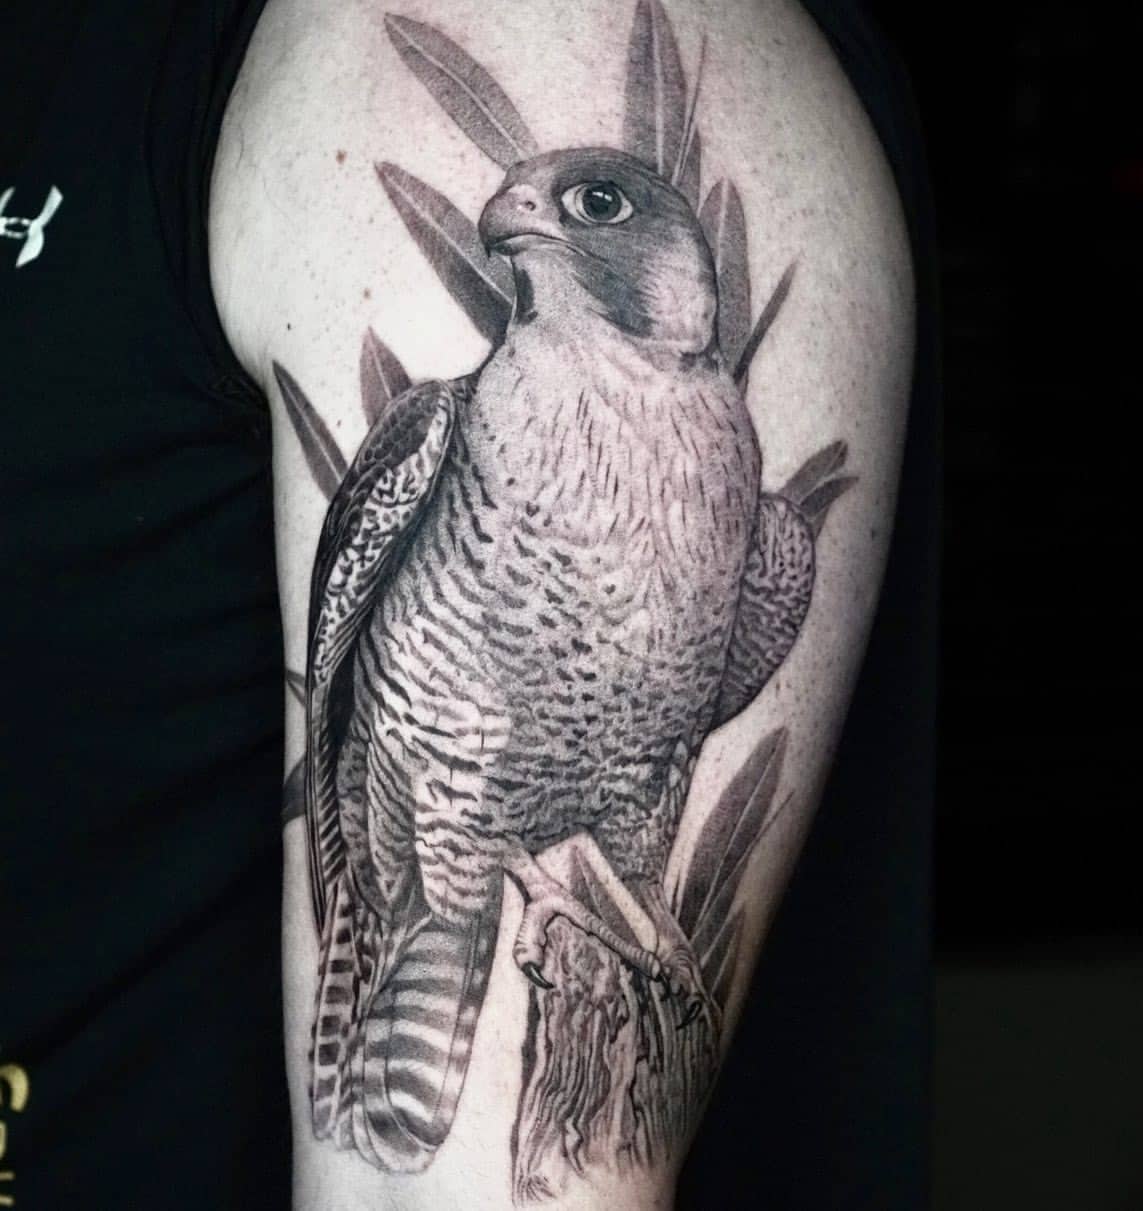 Owl Tattoo Ideas 45